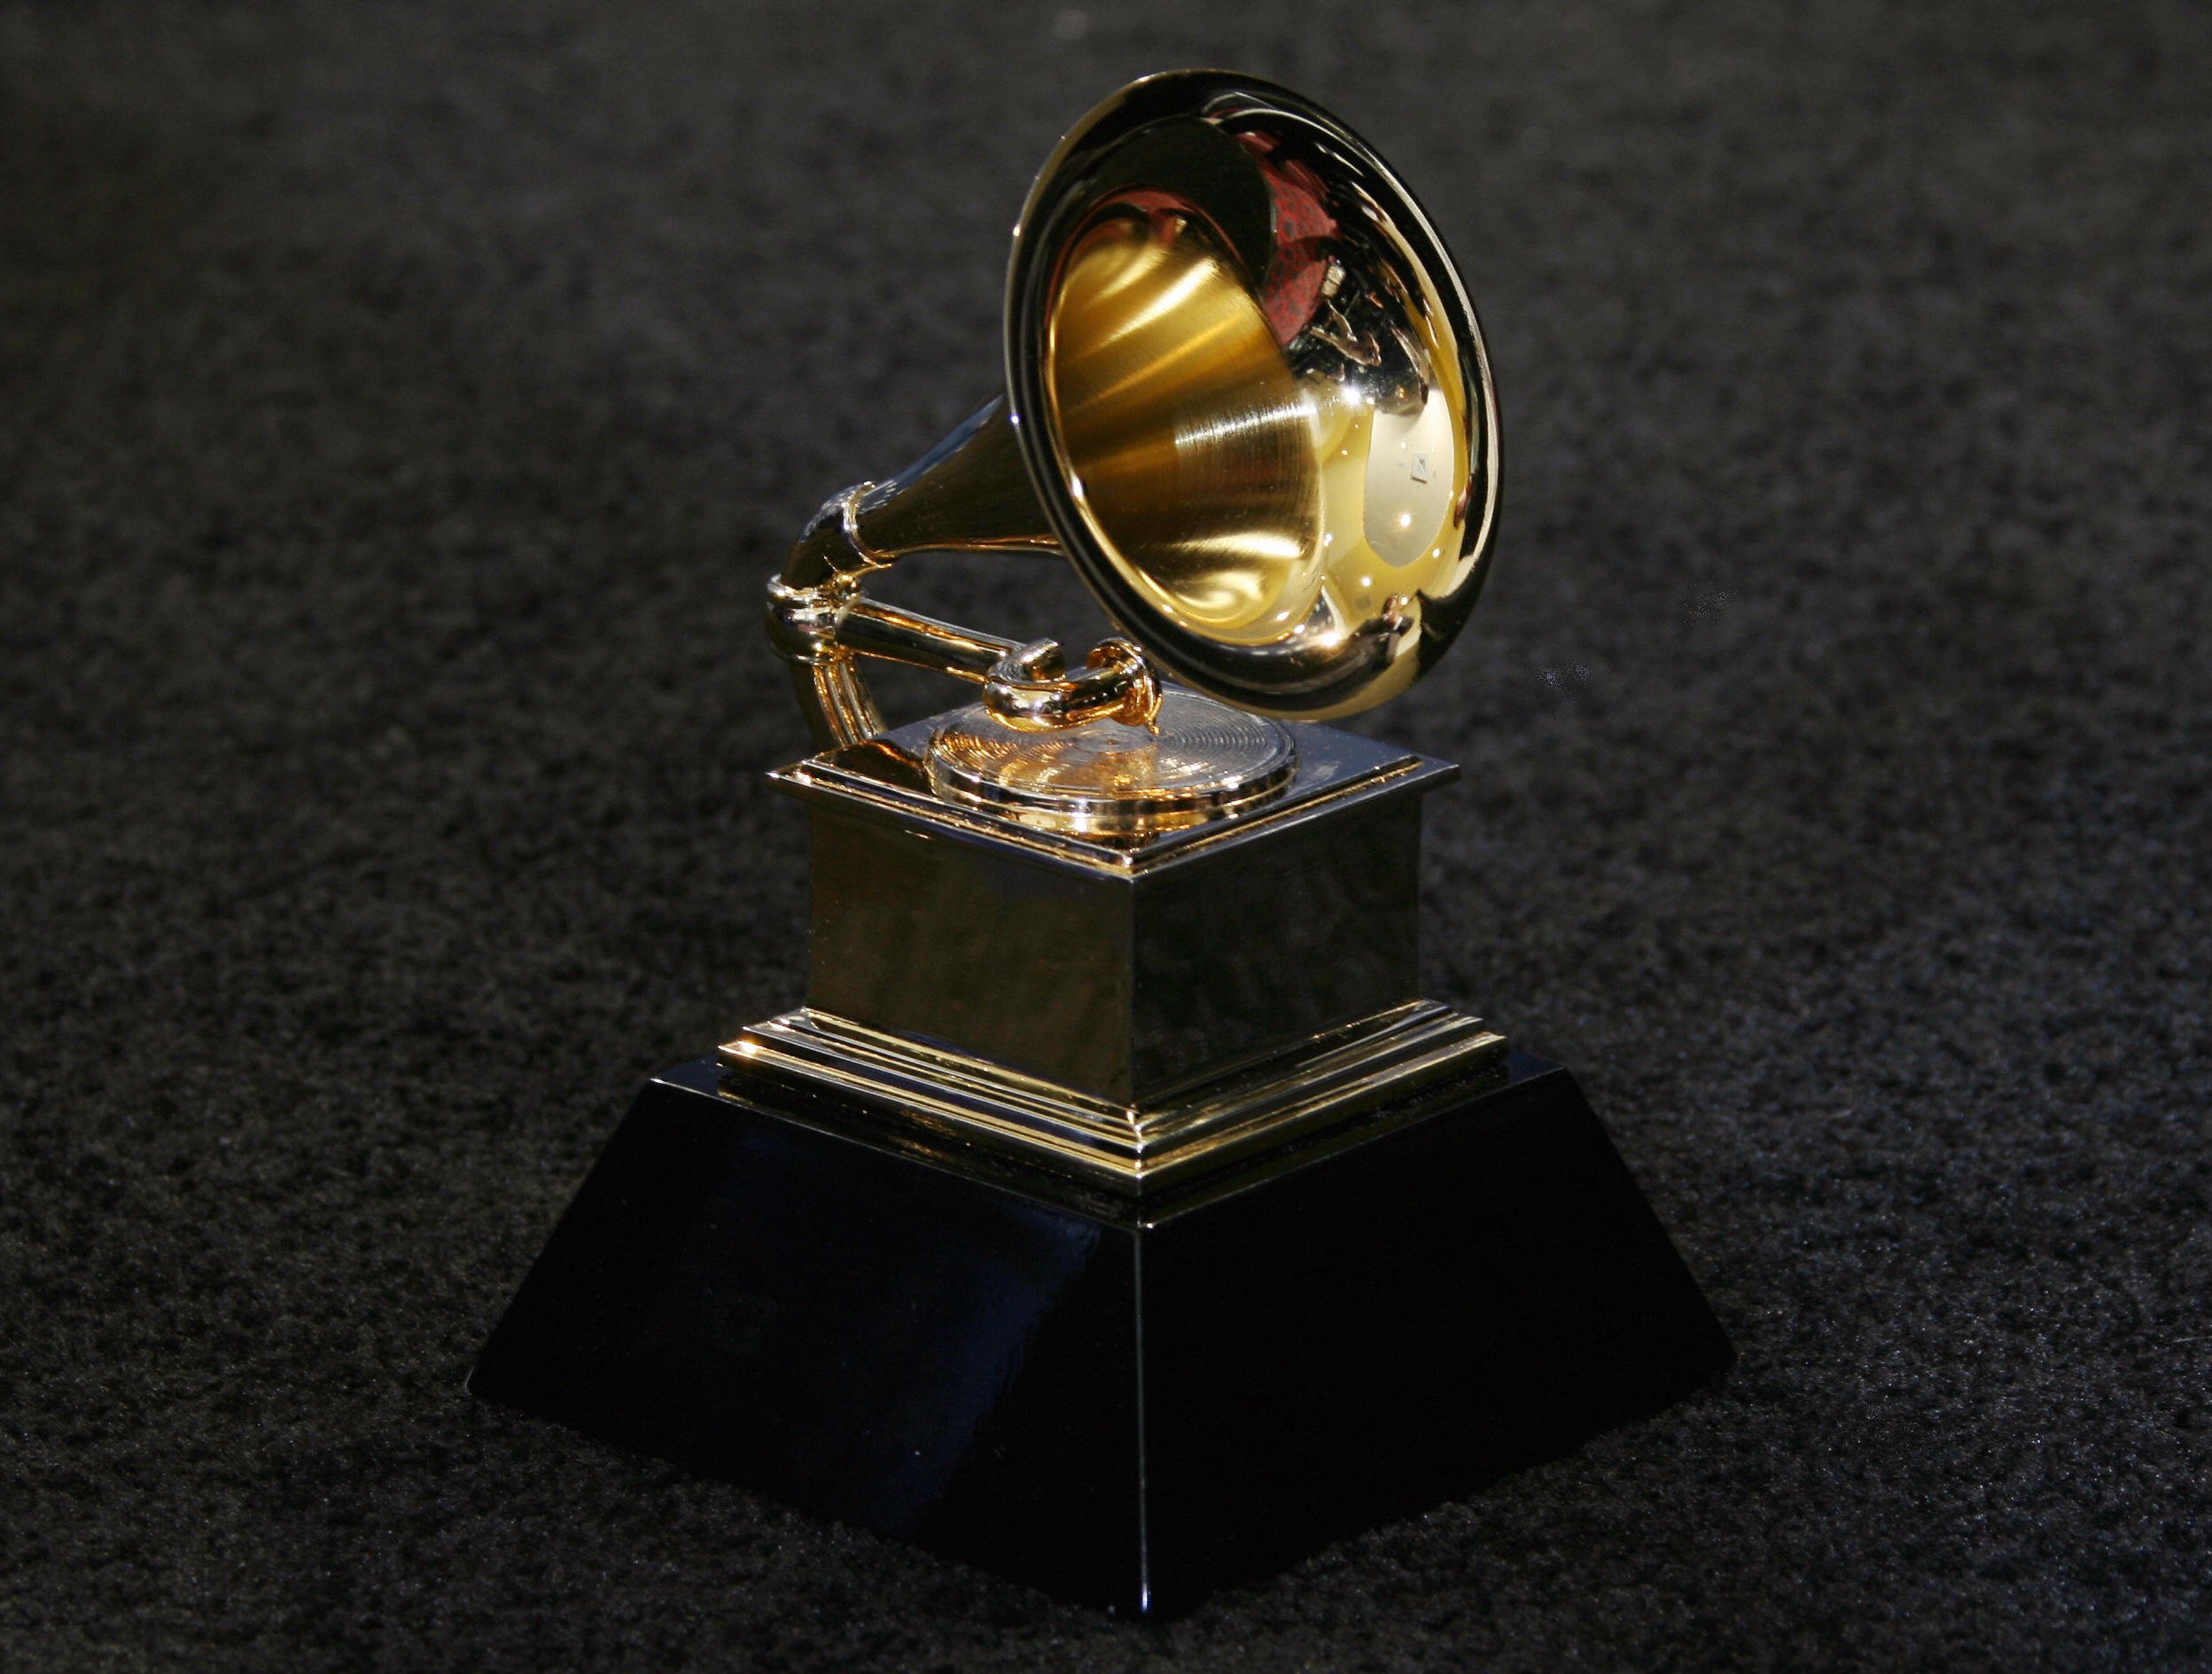  Grammy Awards trophy